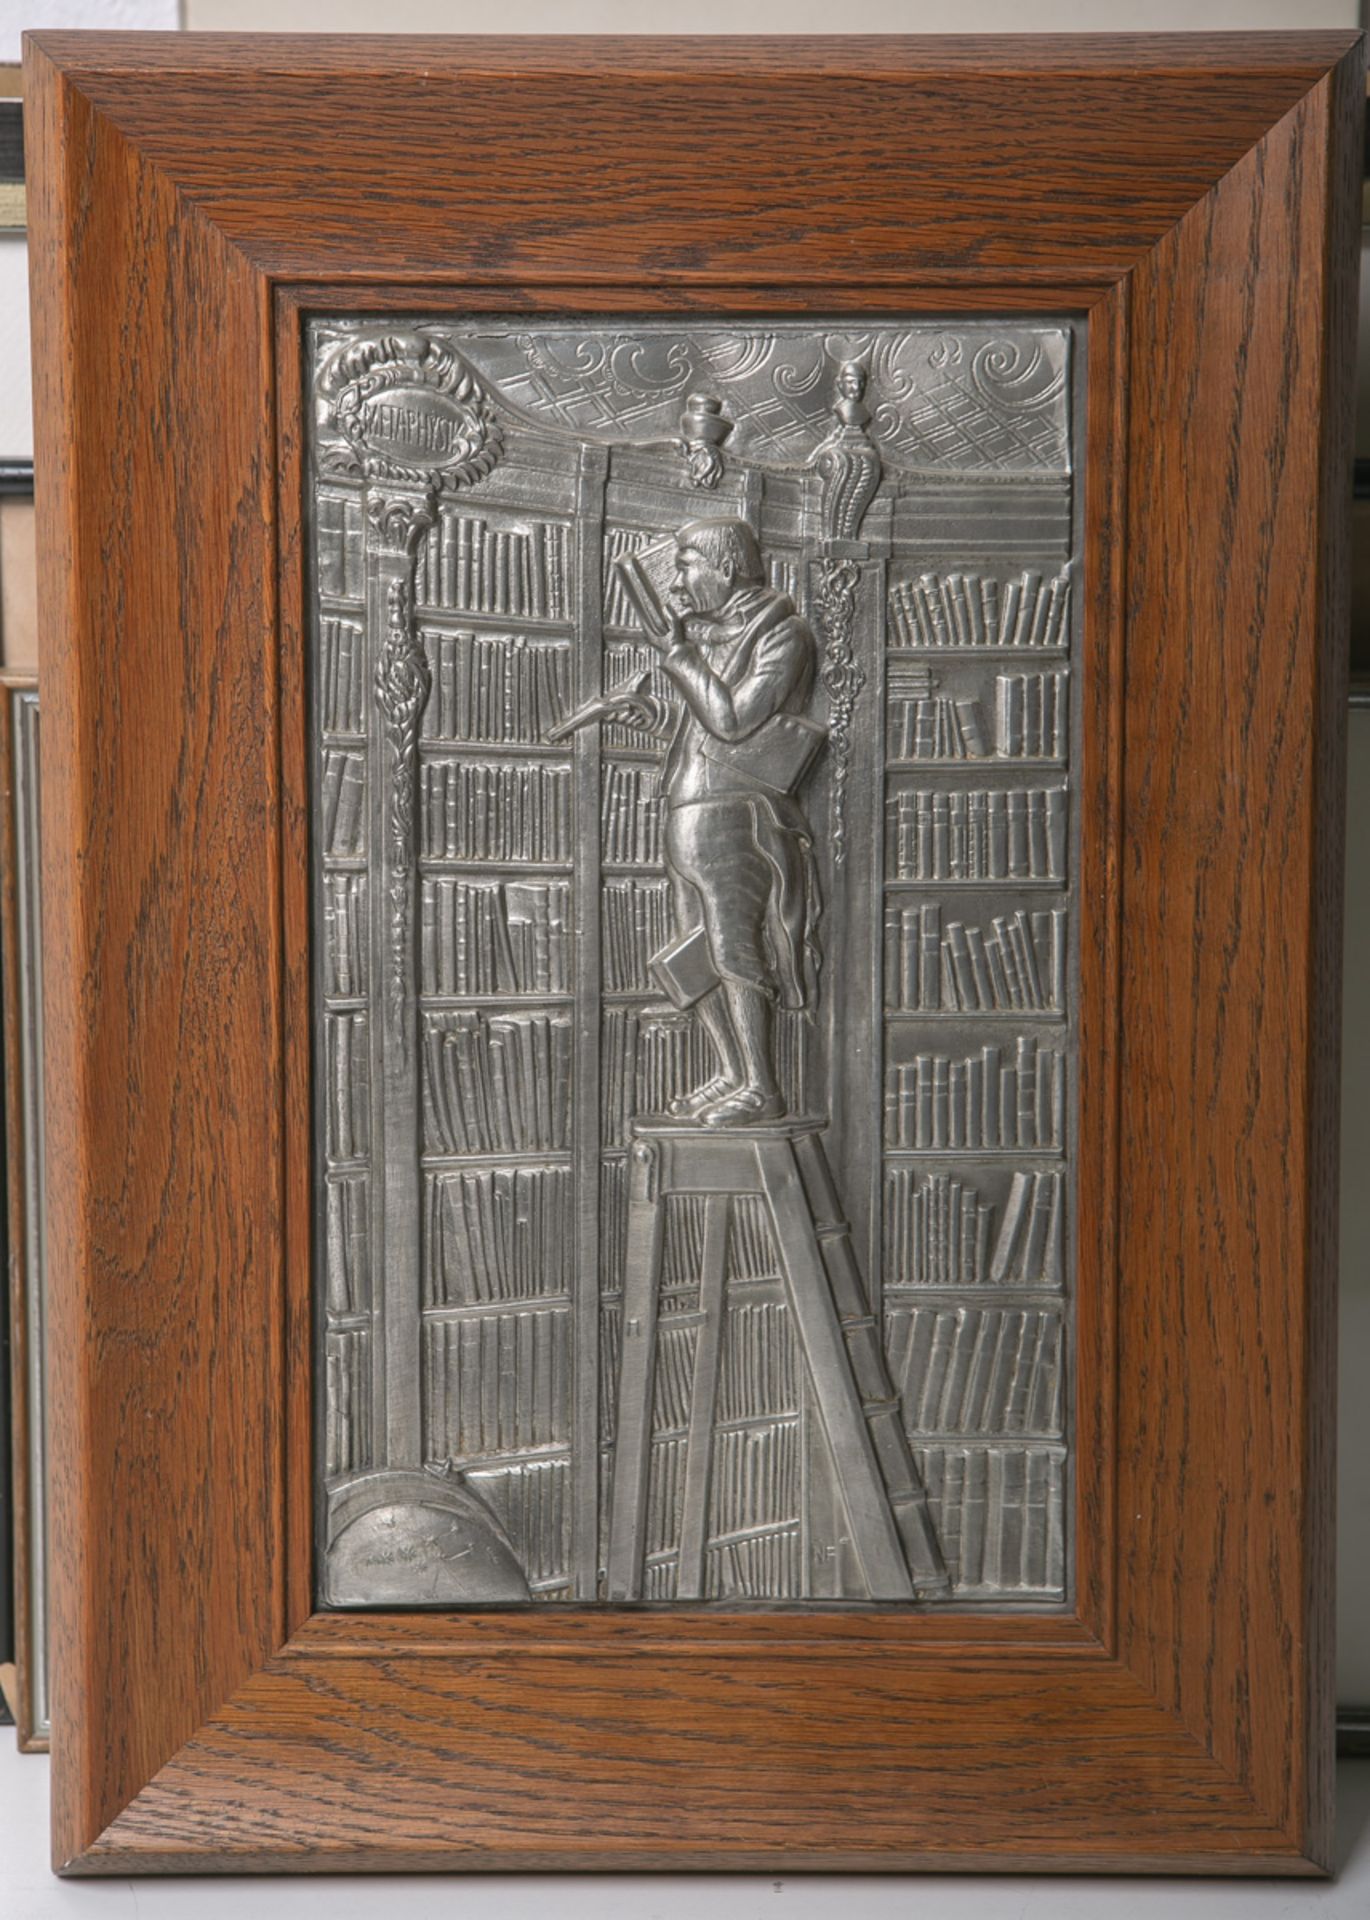 Reliefbildplatte, Bibliothekar auf Leiter vor Bücherwand stehend